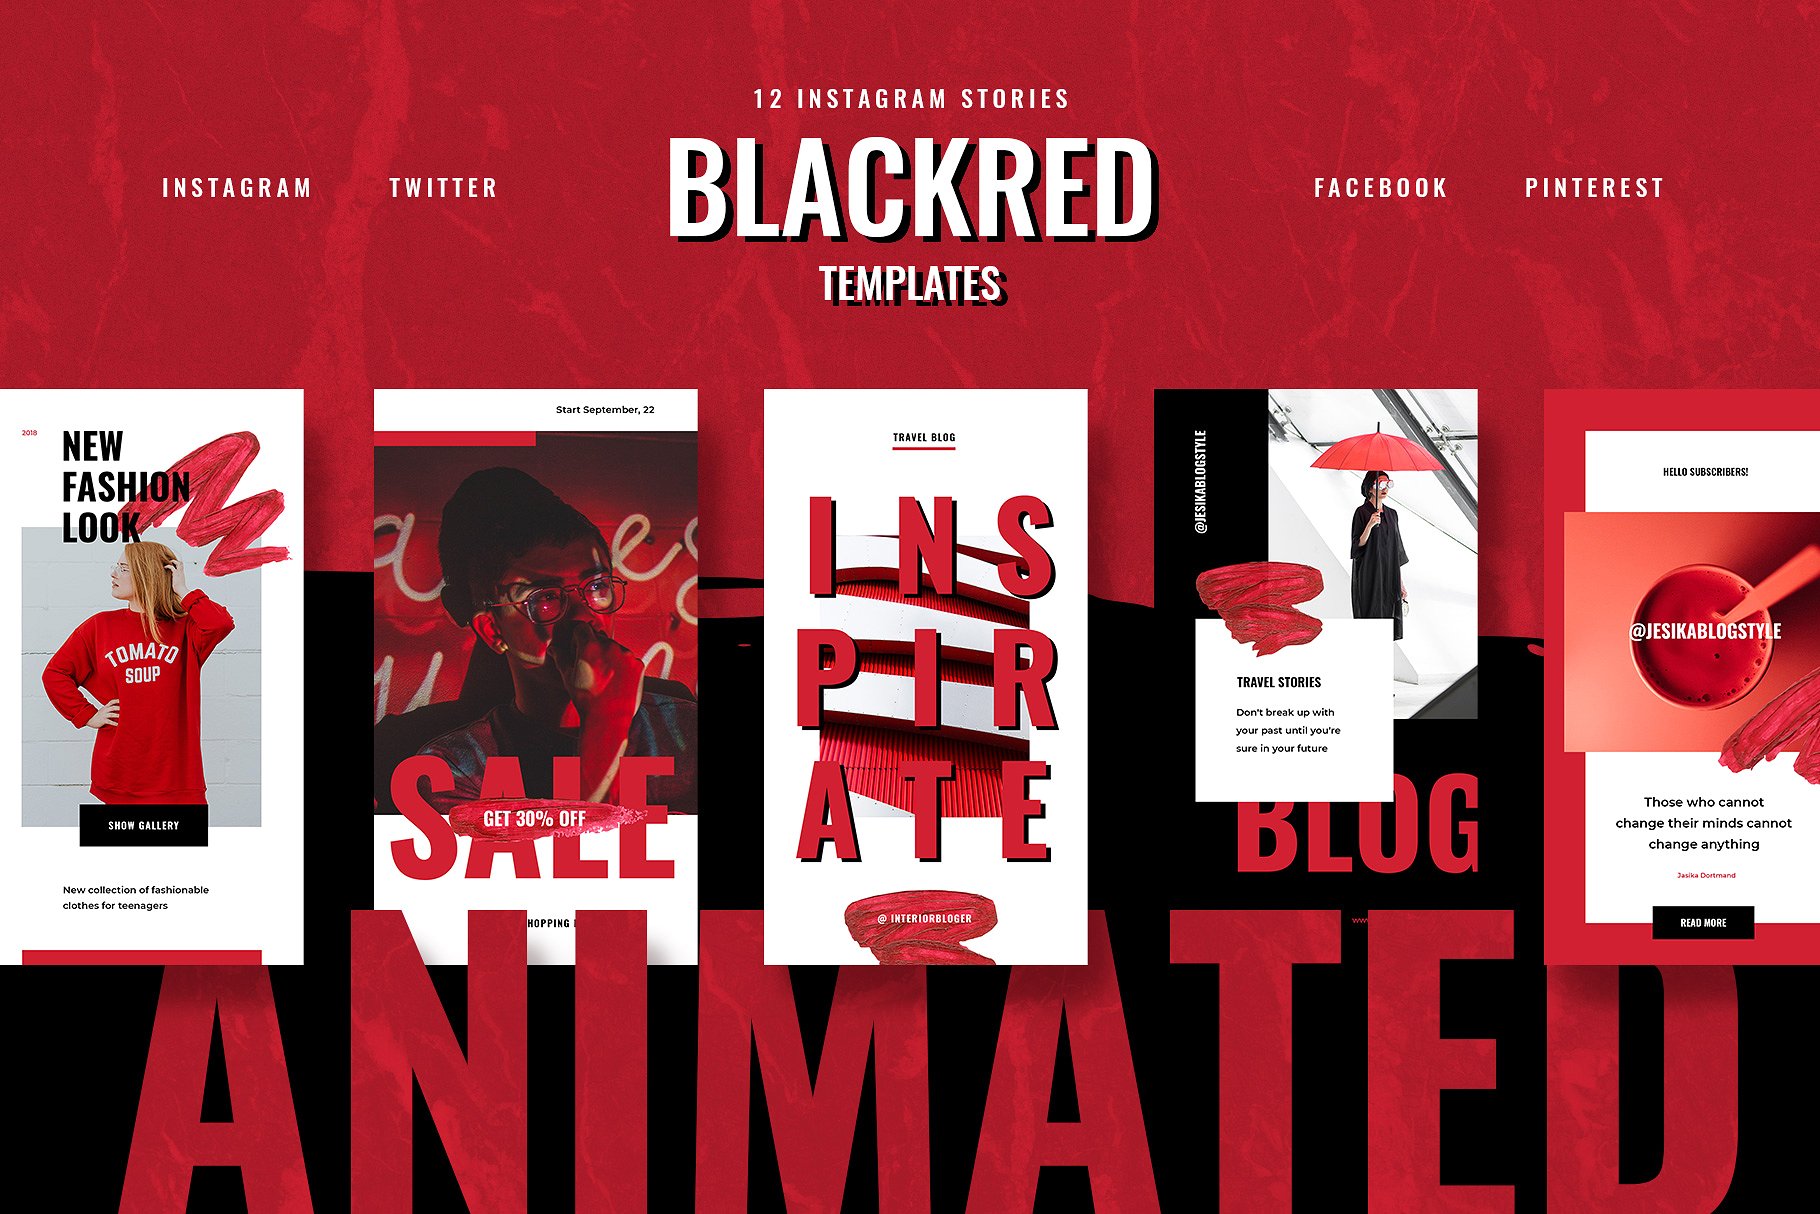 色彩活泼的红黑配色Ins故事贴图模板素材库精选 ANIMATED Blackred Instagram Stories插图